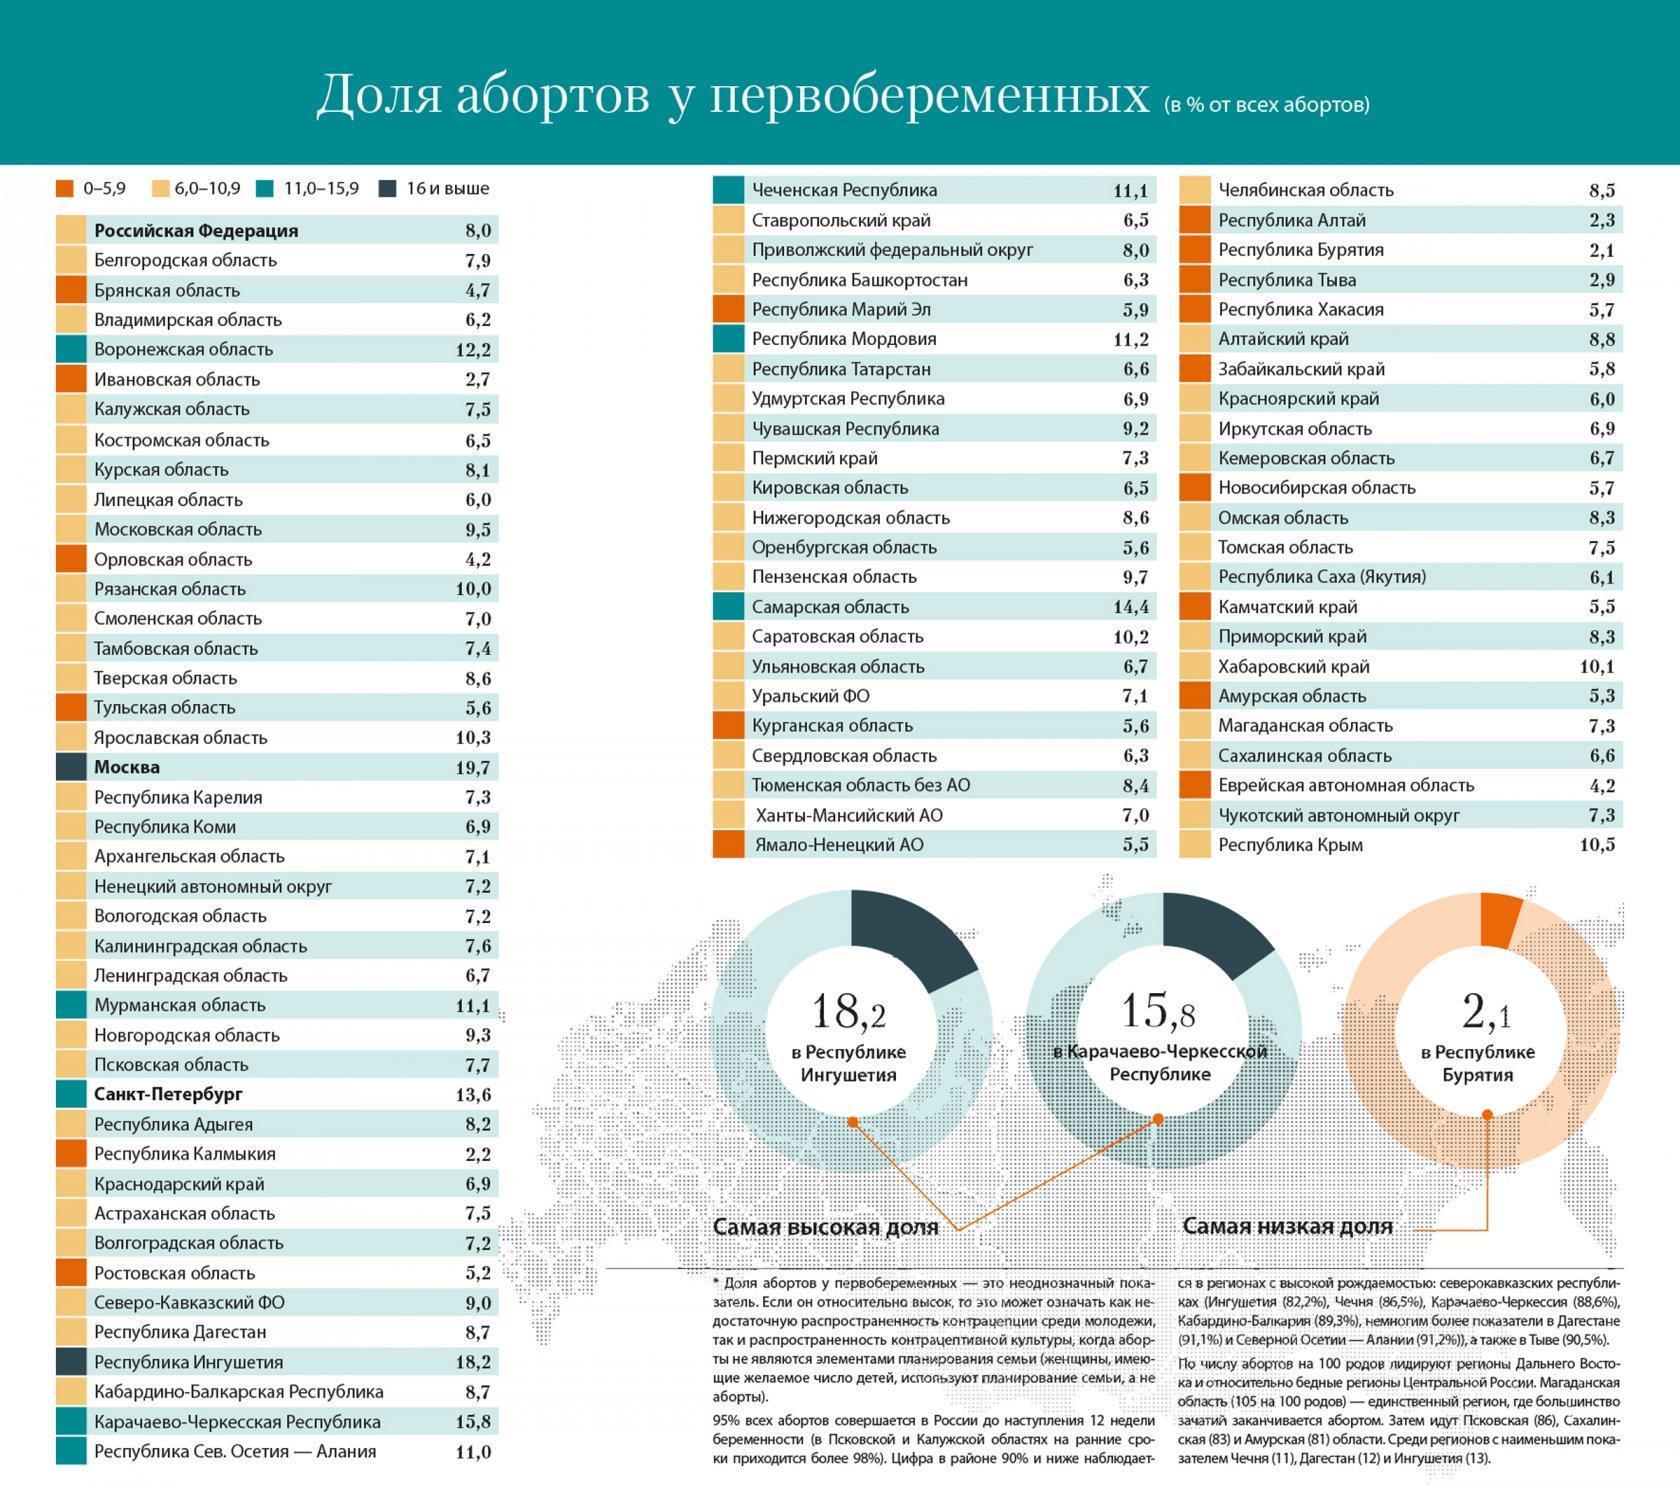 Распространенность абортов в России: от абортной культуры к маргинальному явлению